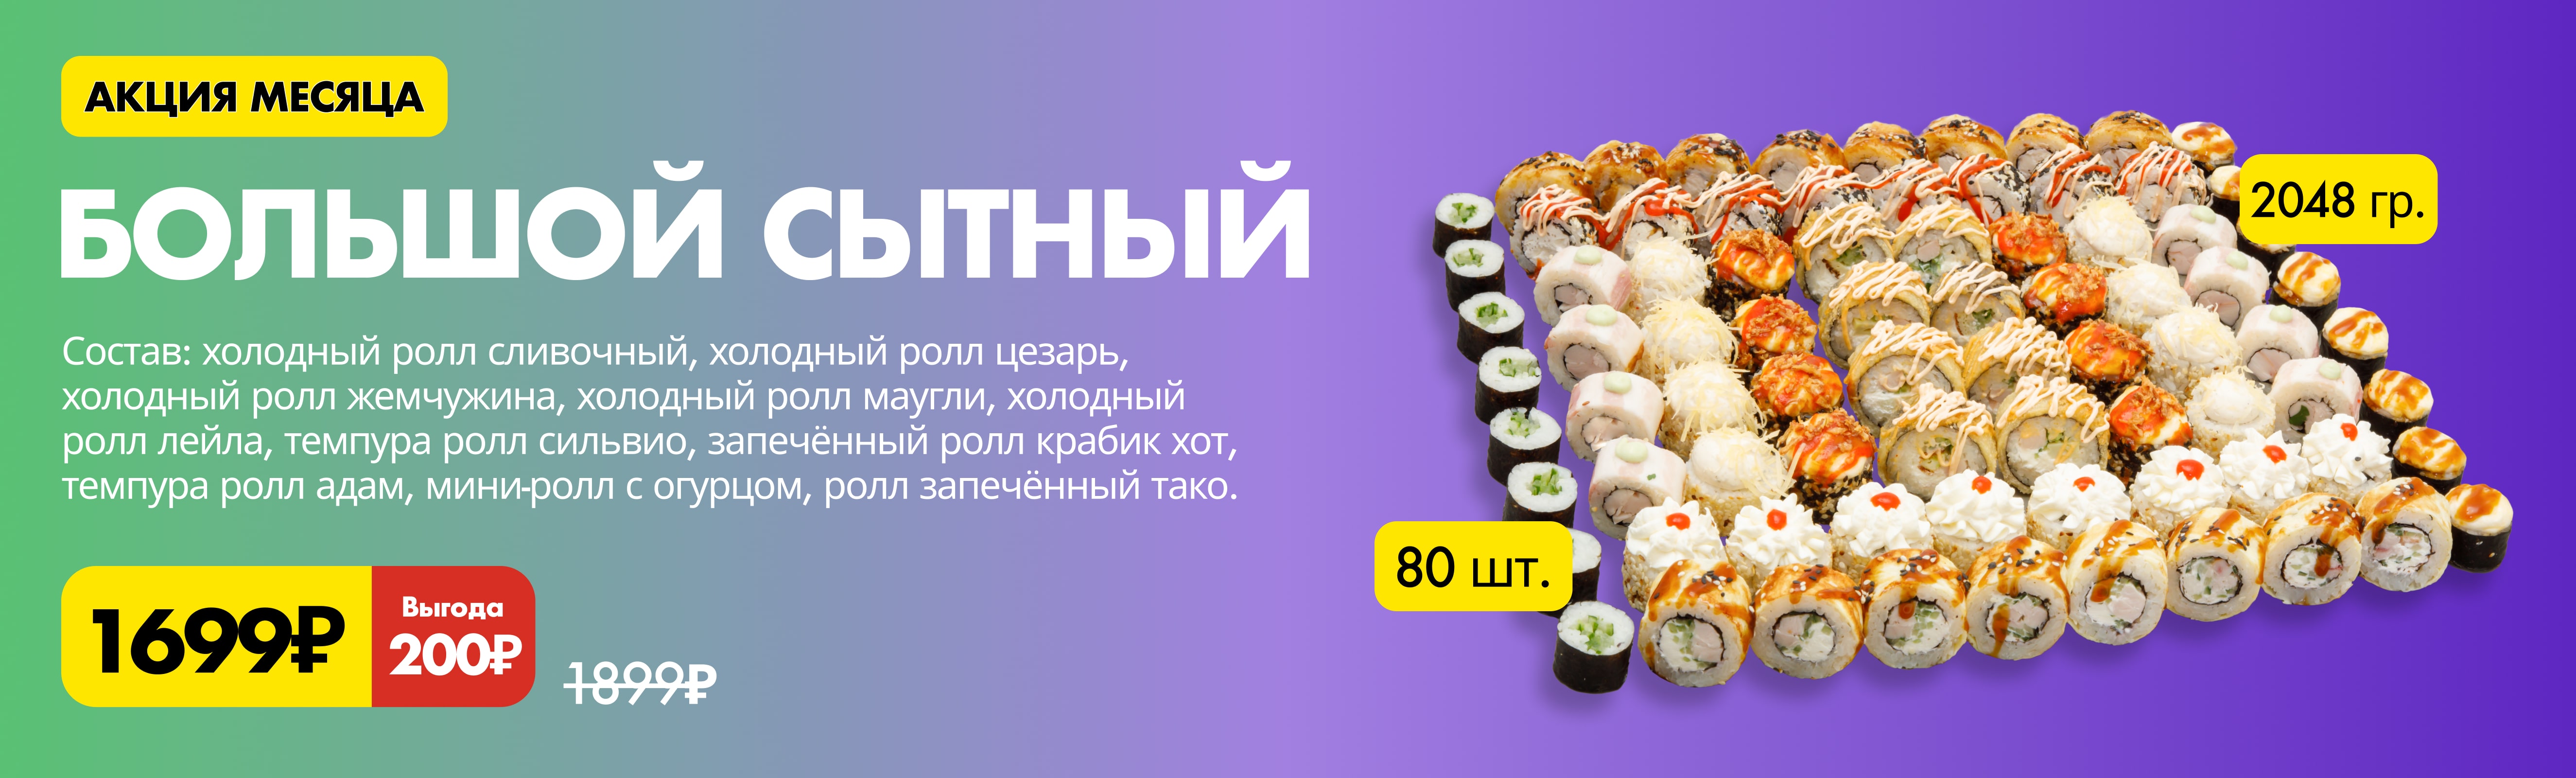 Роллы по акции от Pizzapan.ru